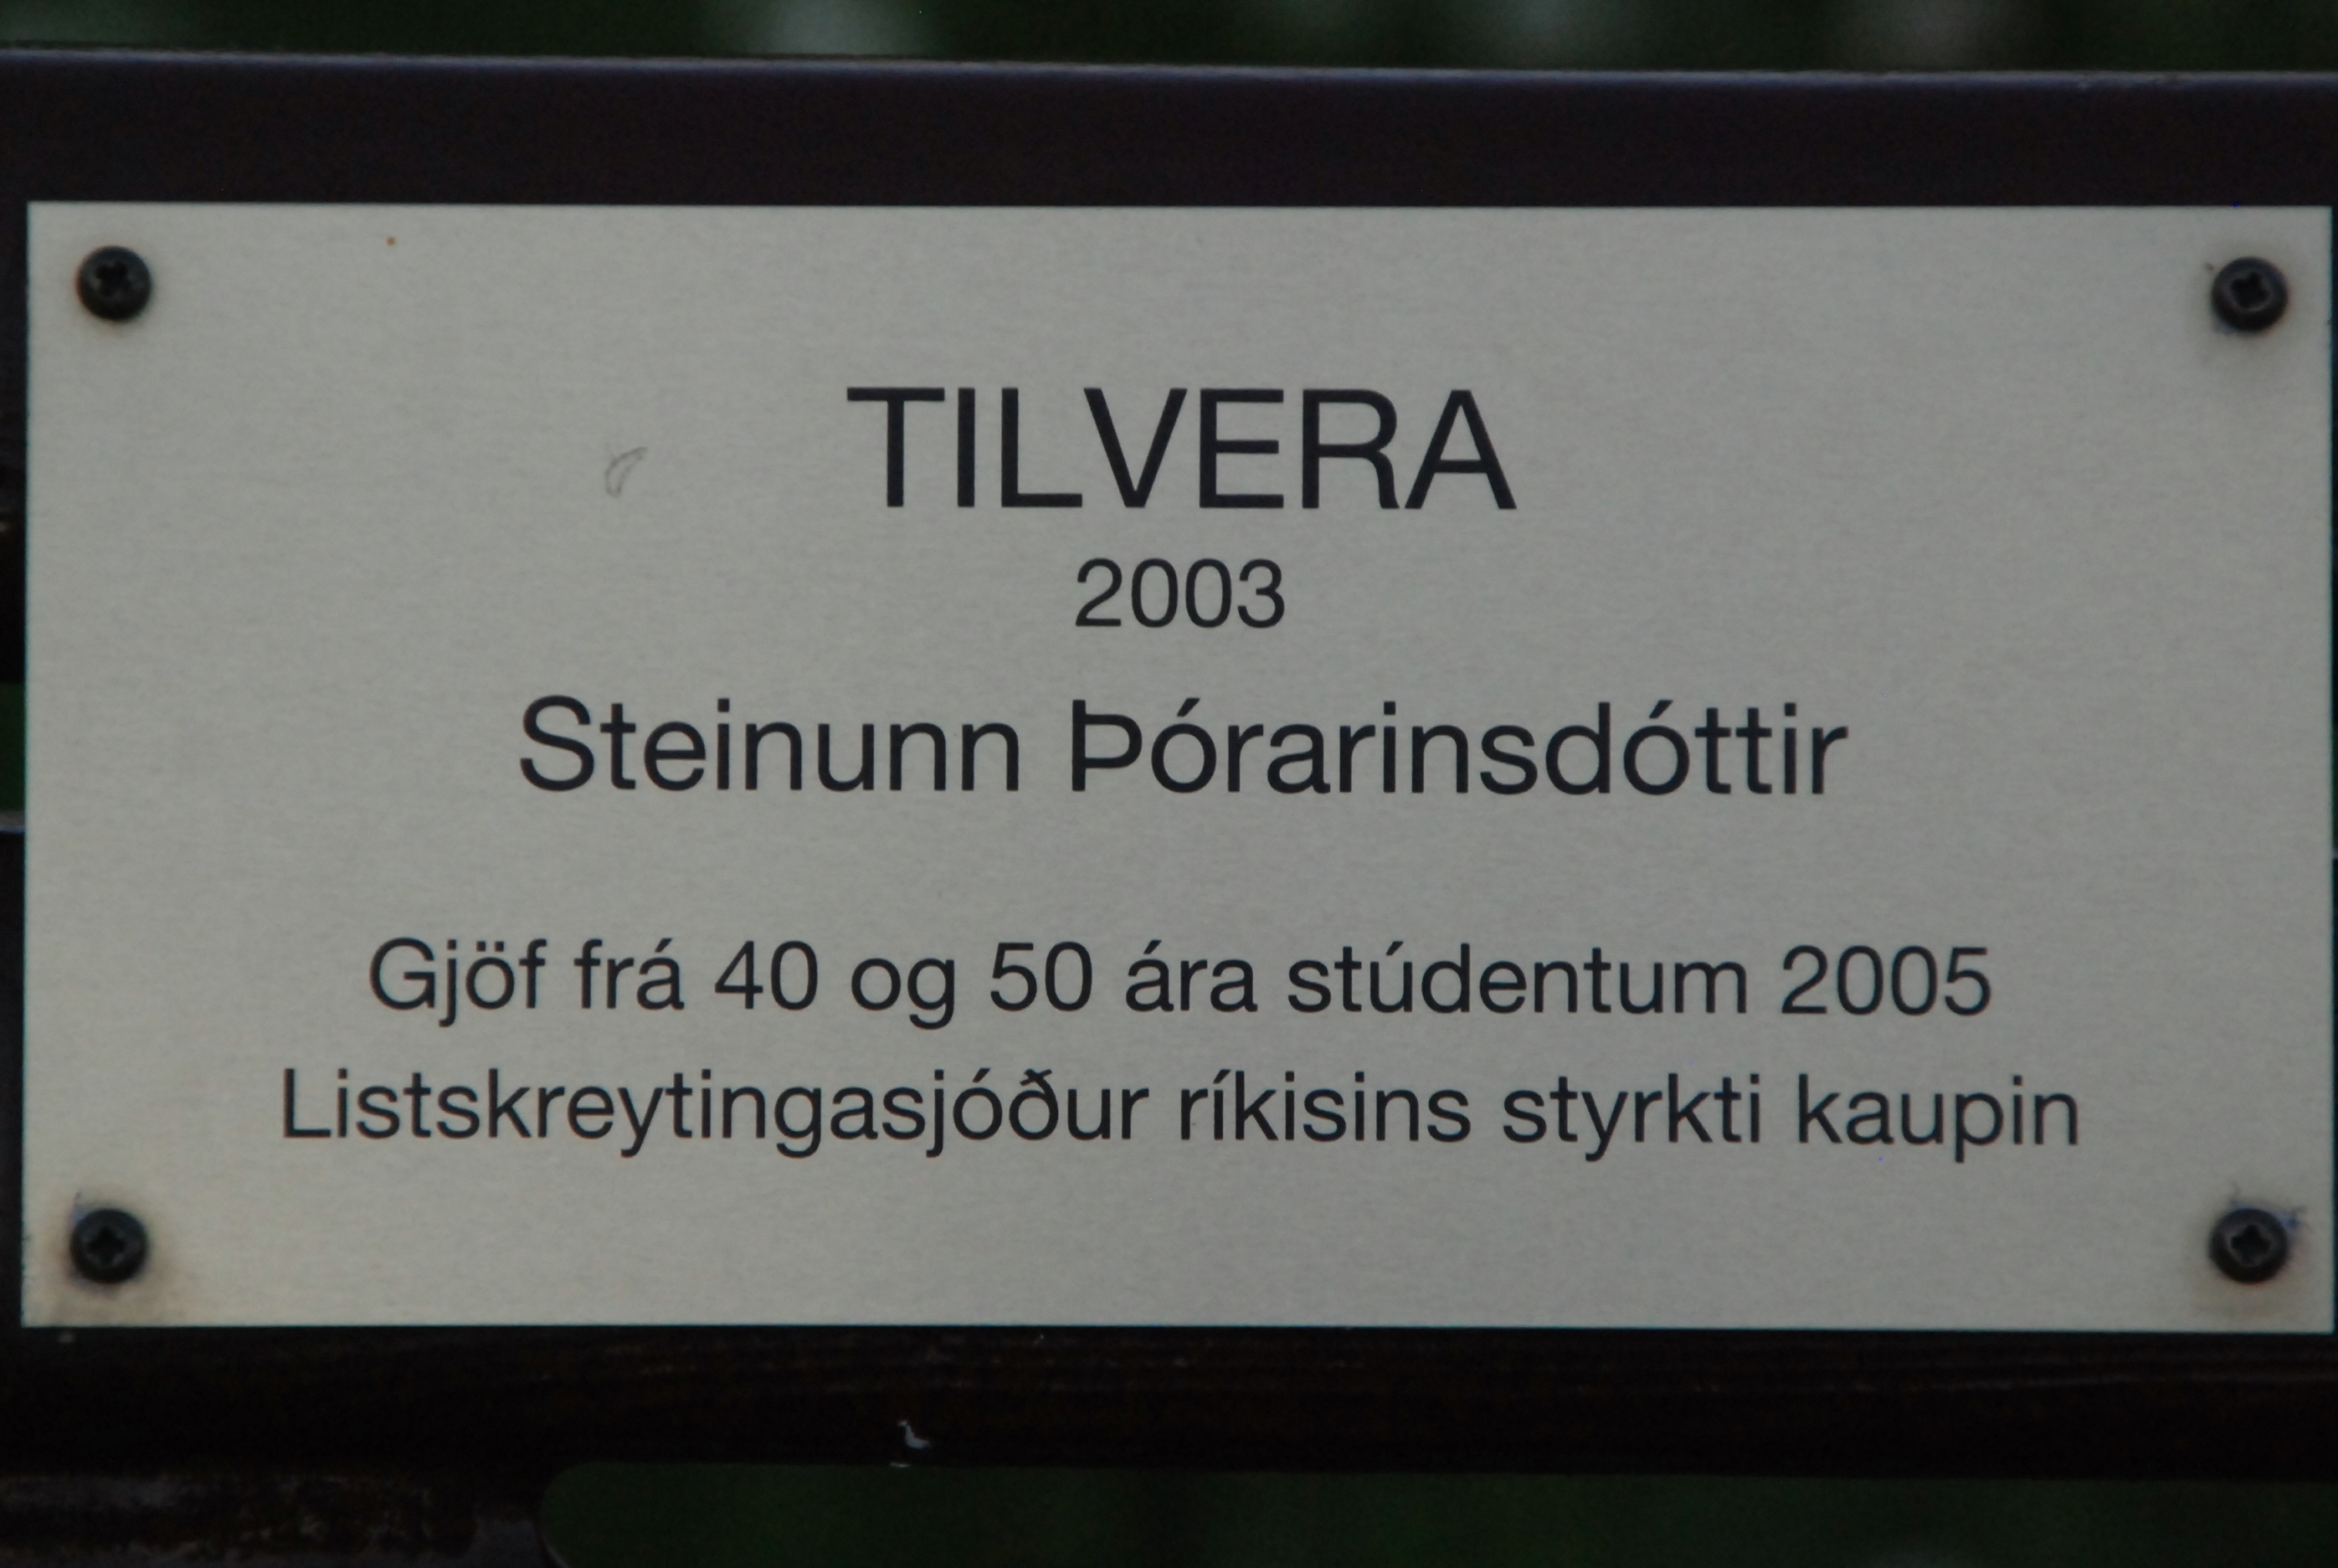 TILVERA, 2003, Steinunn Porarinsdottir